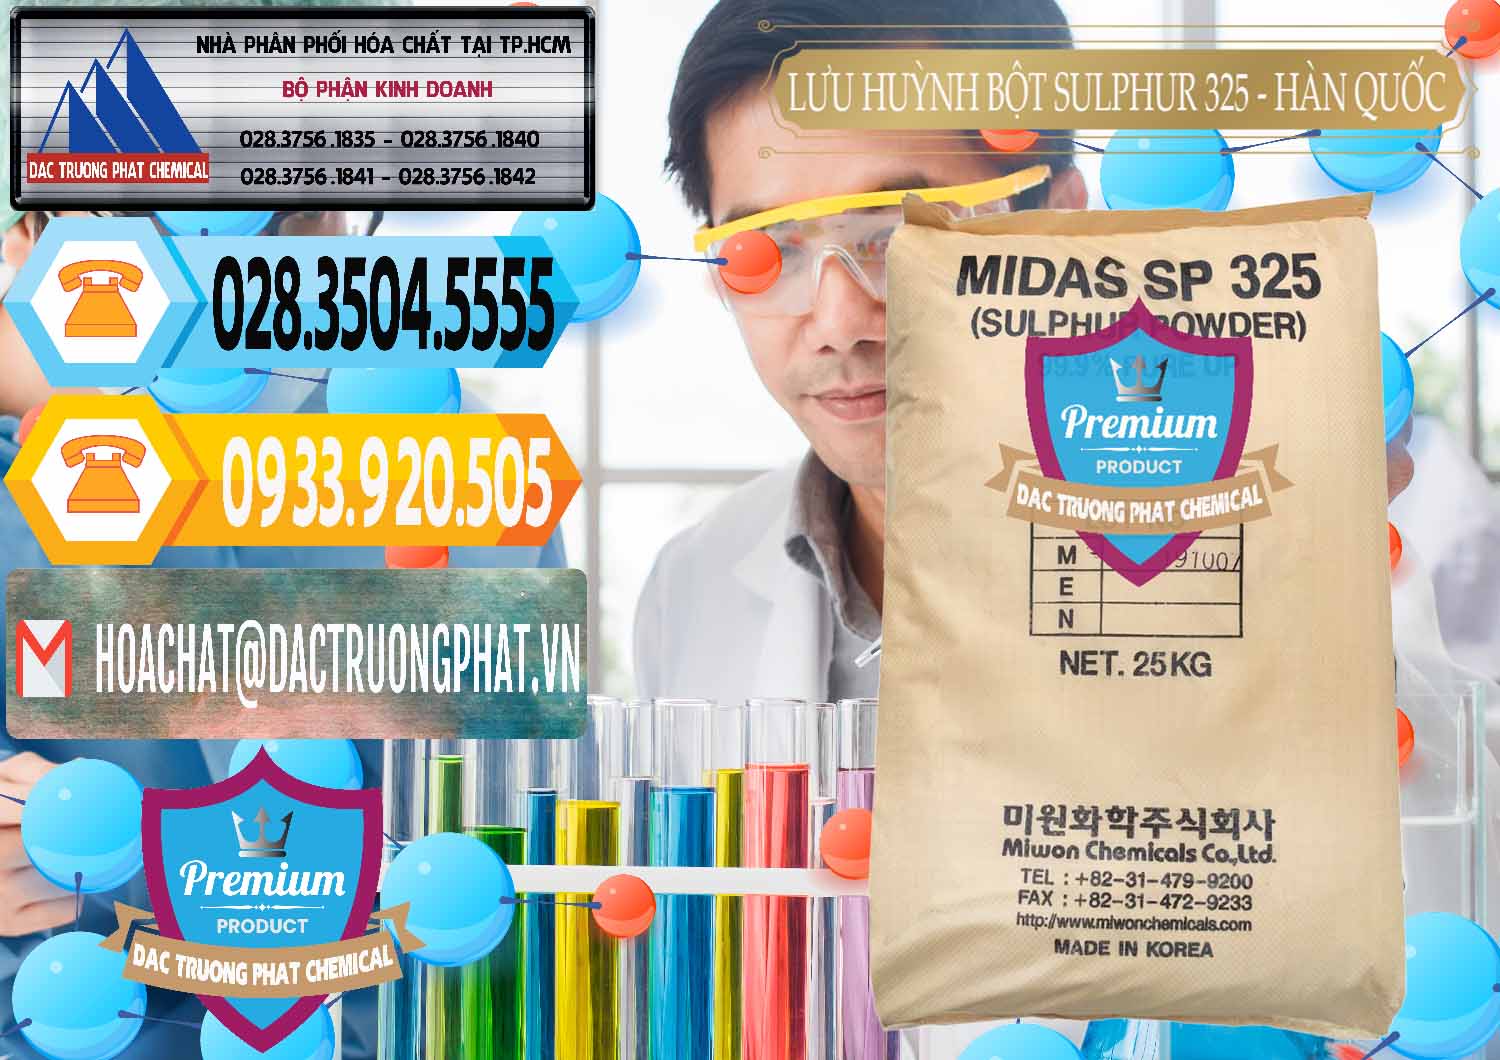 Công ty nhập khẩu và bán Lưu huỳnh Bột - Sulfur Powder Midas SP 325 Hàn Quốc Korea - 0198 - Nhà cung ứng ( phân phối ) hóa chất tại TP.HCM - hoachattayrua.net